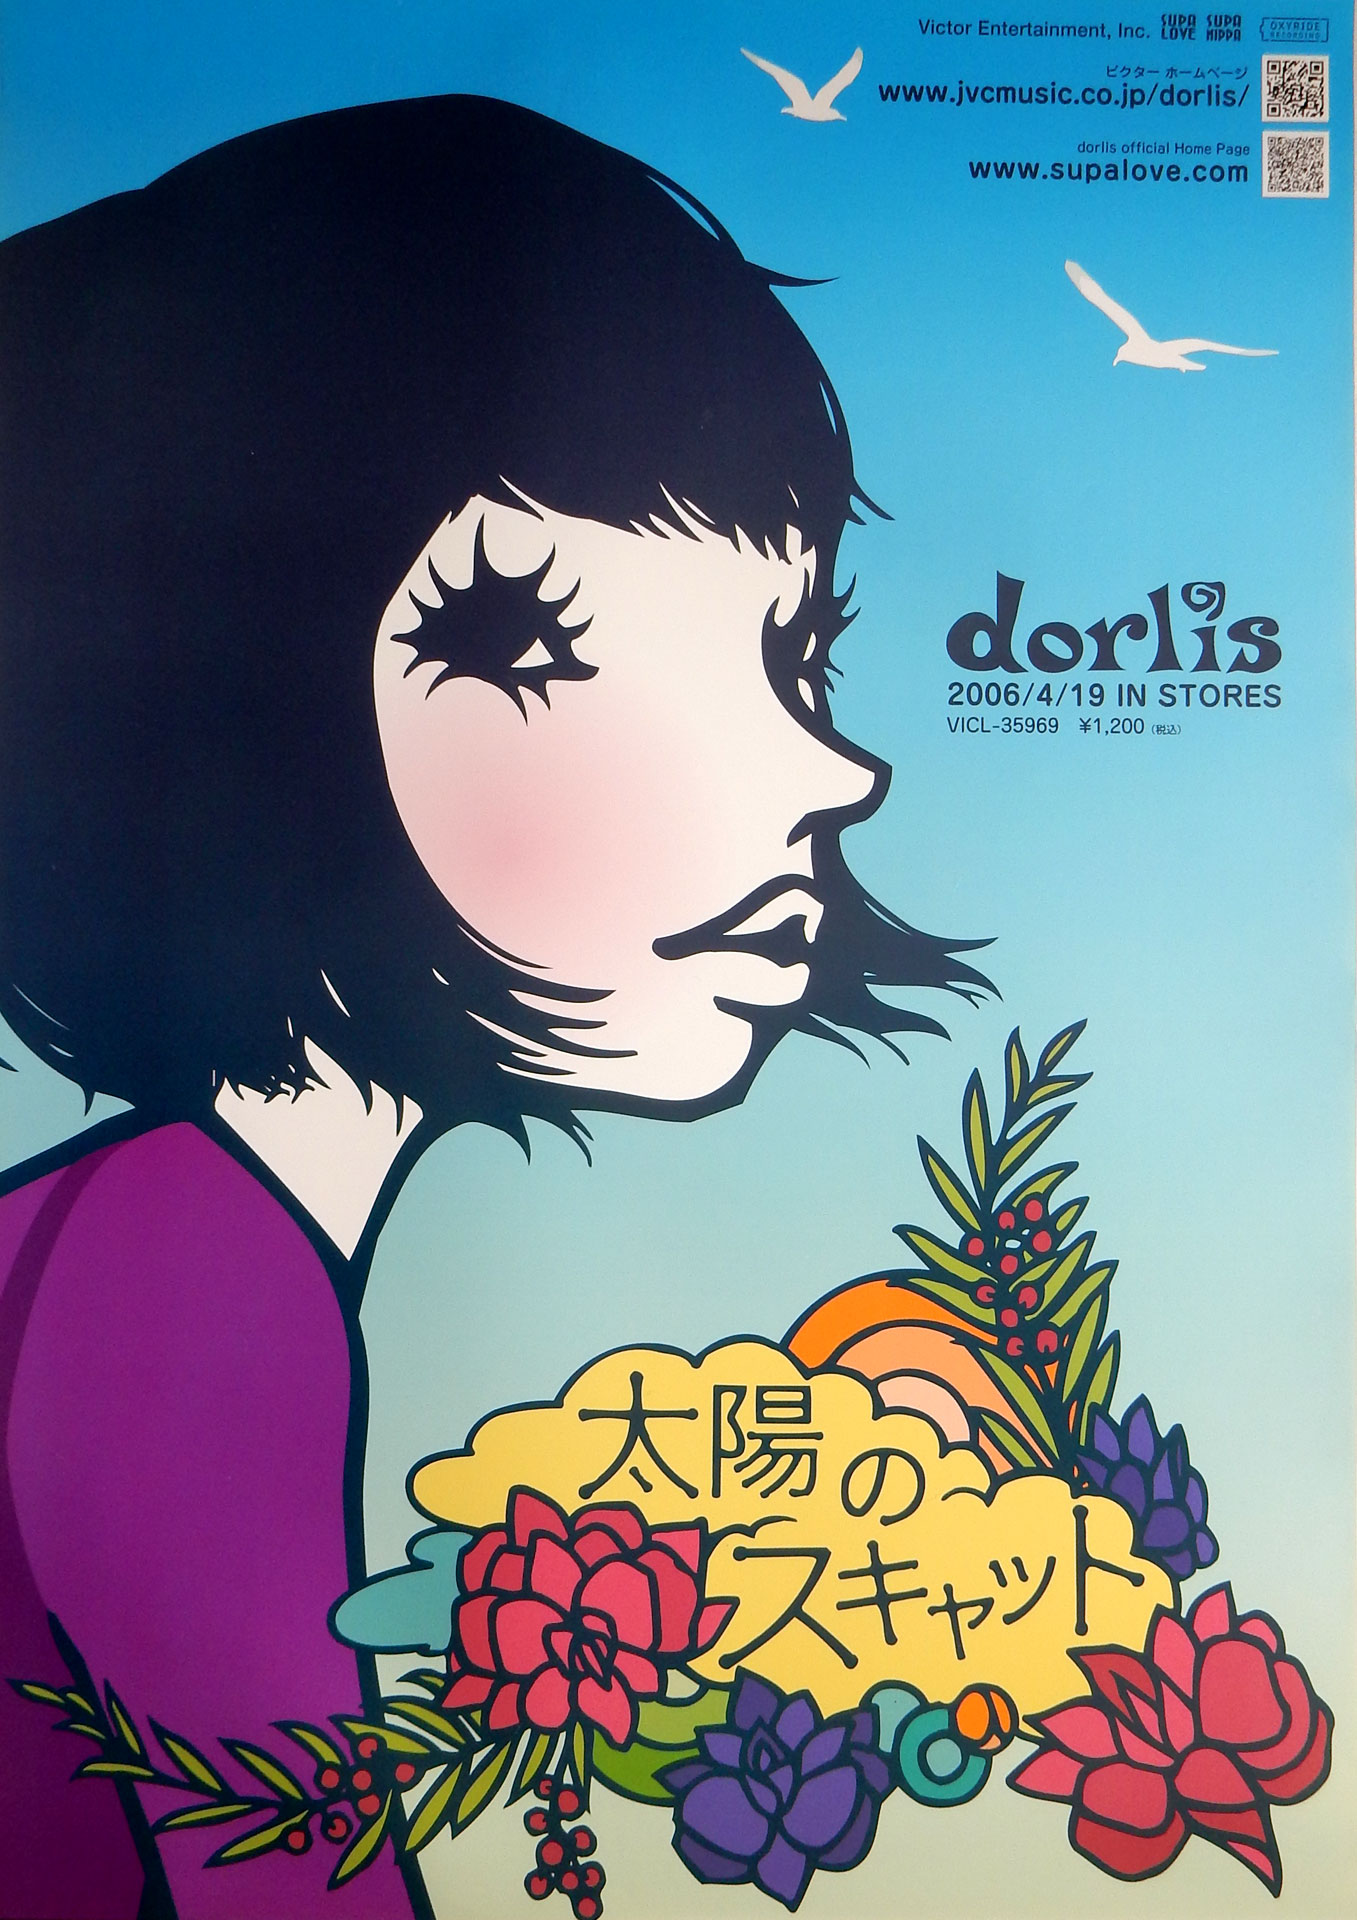 dorlis 「太陽のスキャット」のポスター